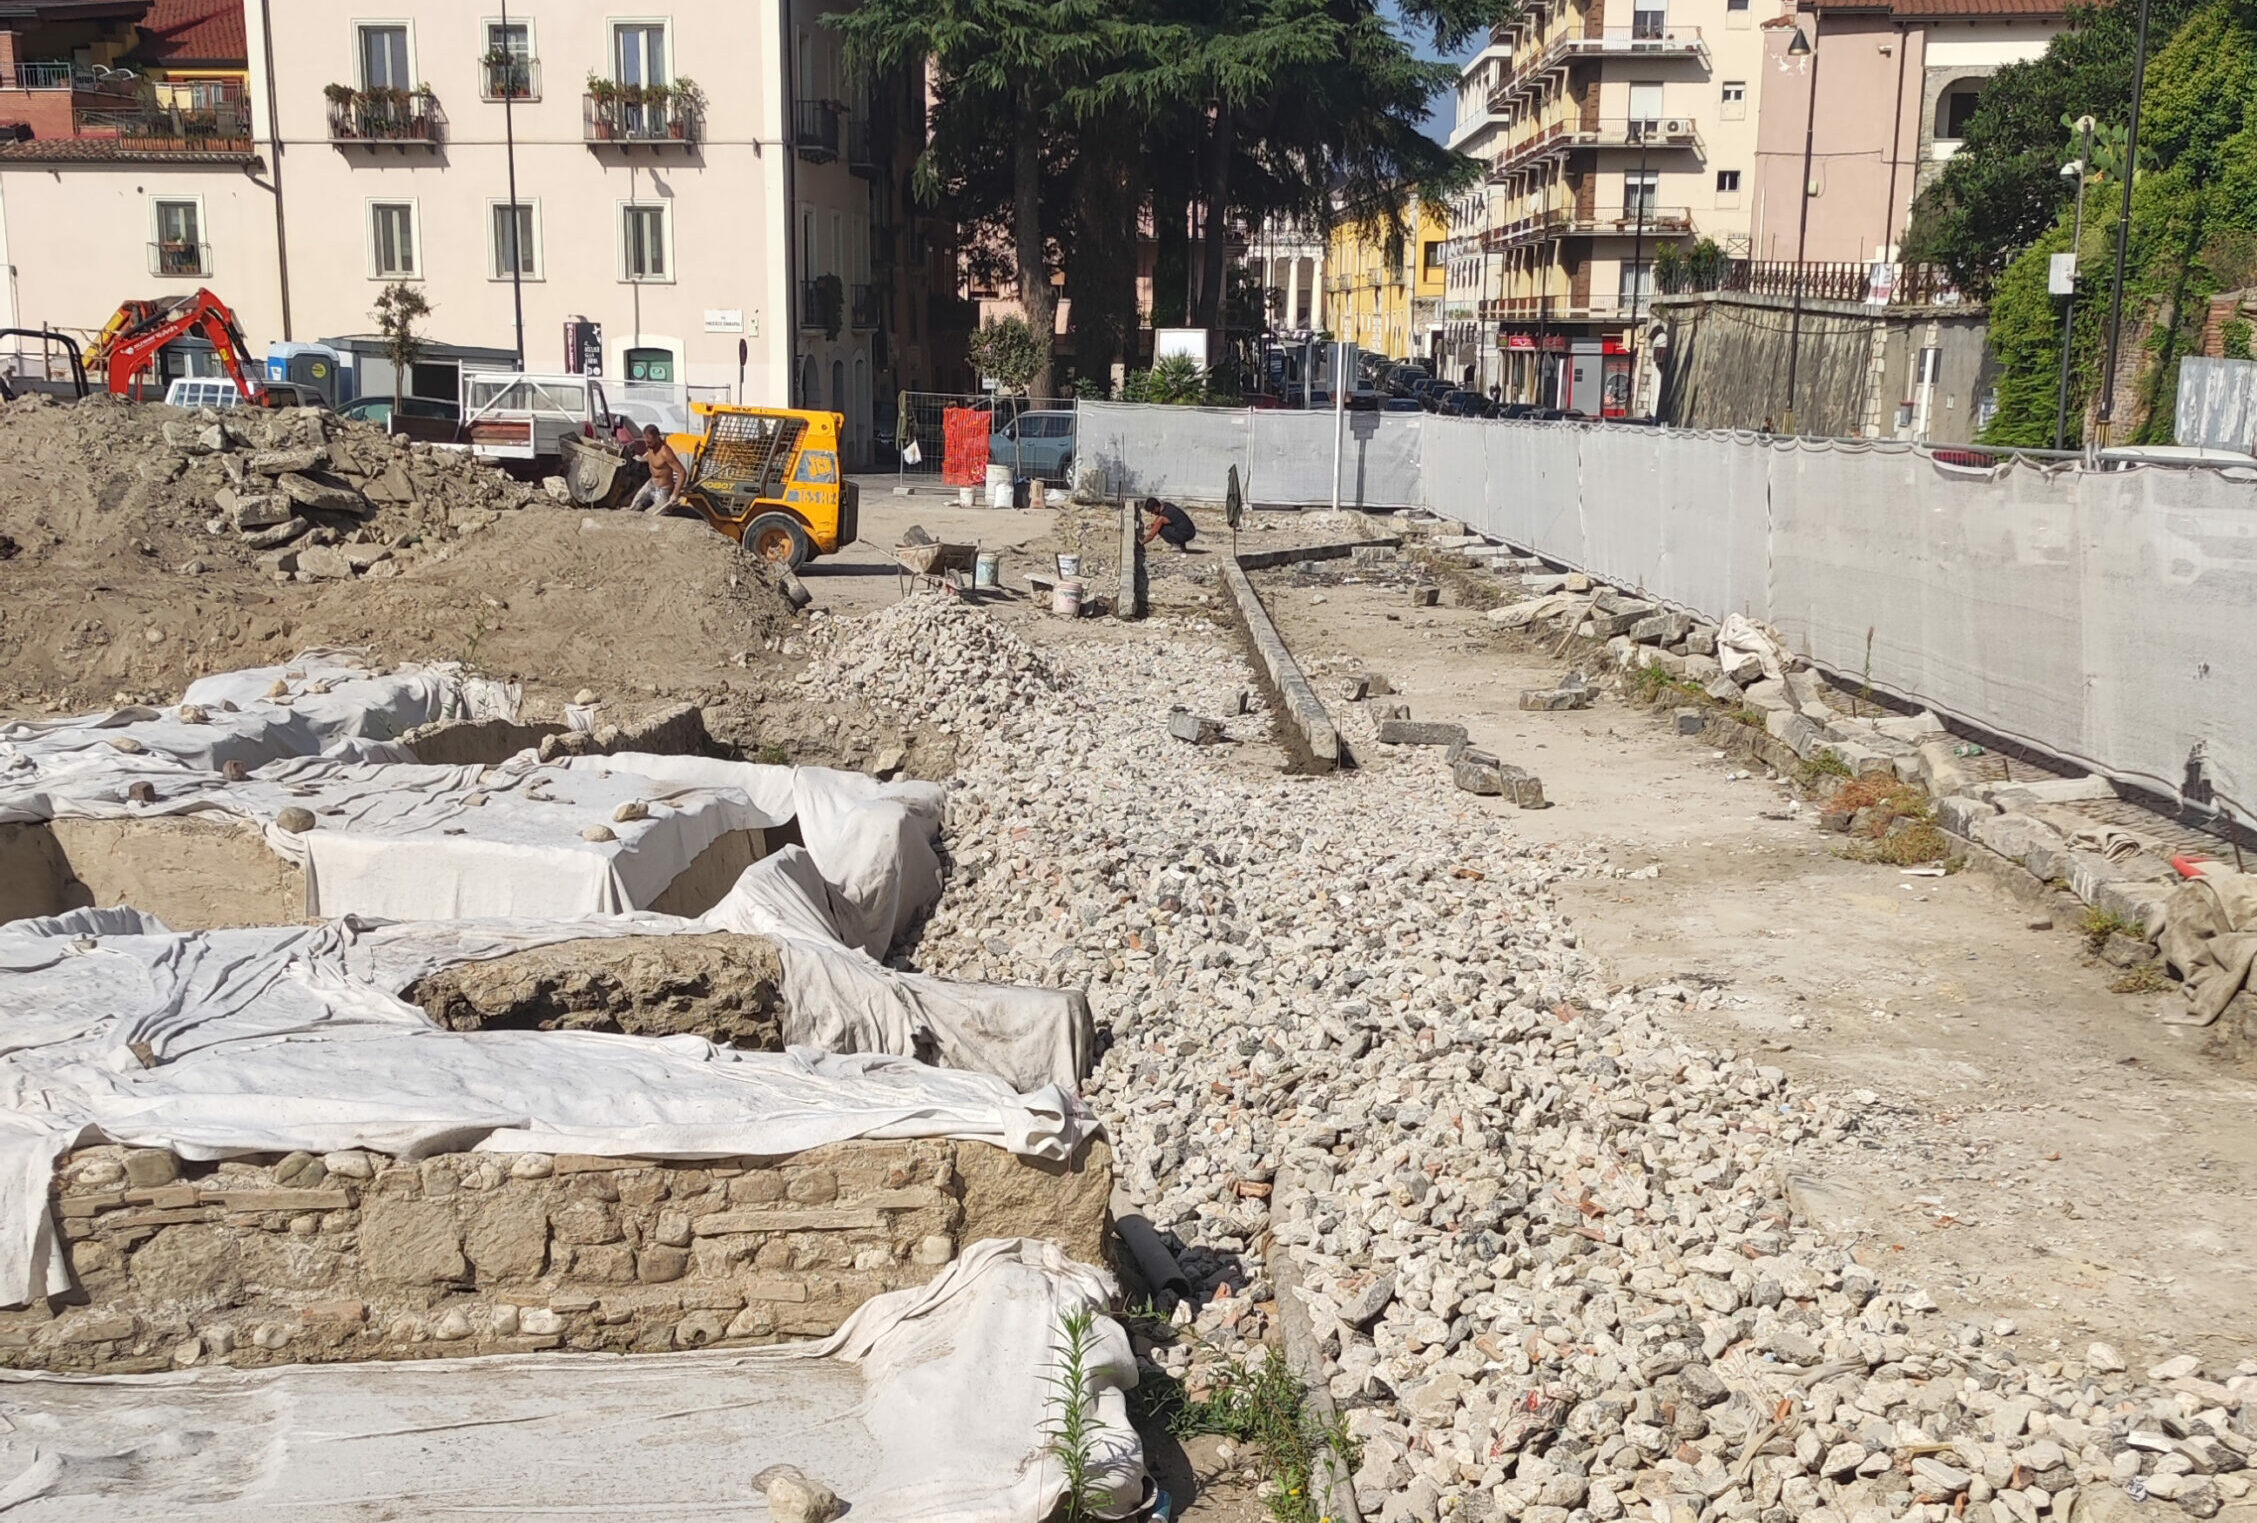 Altrabenevento: “In Piazza Cardinal Pacca i reperti archeologici utilizzati per contenere le pietre della massicciata”